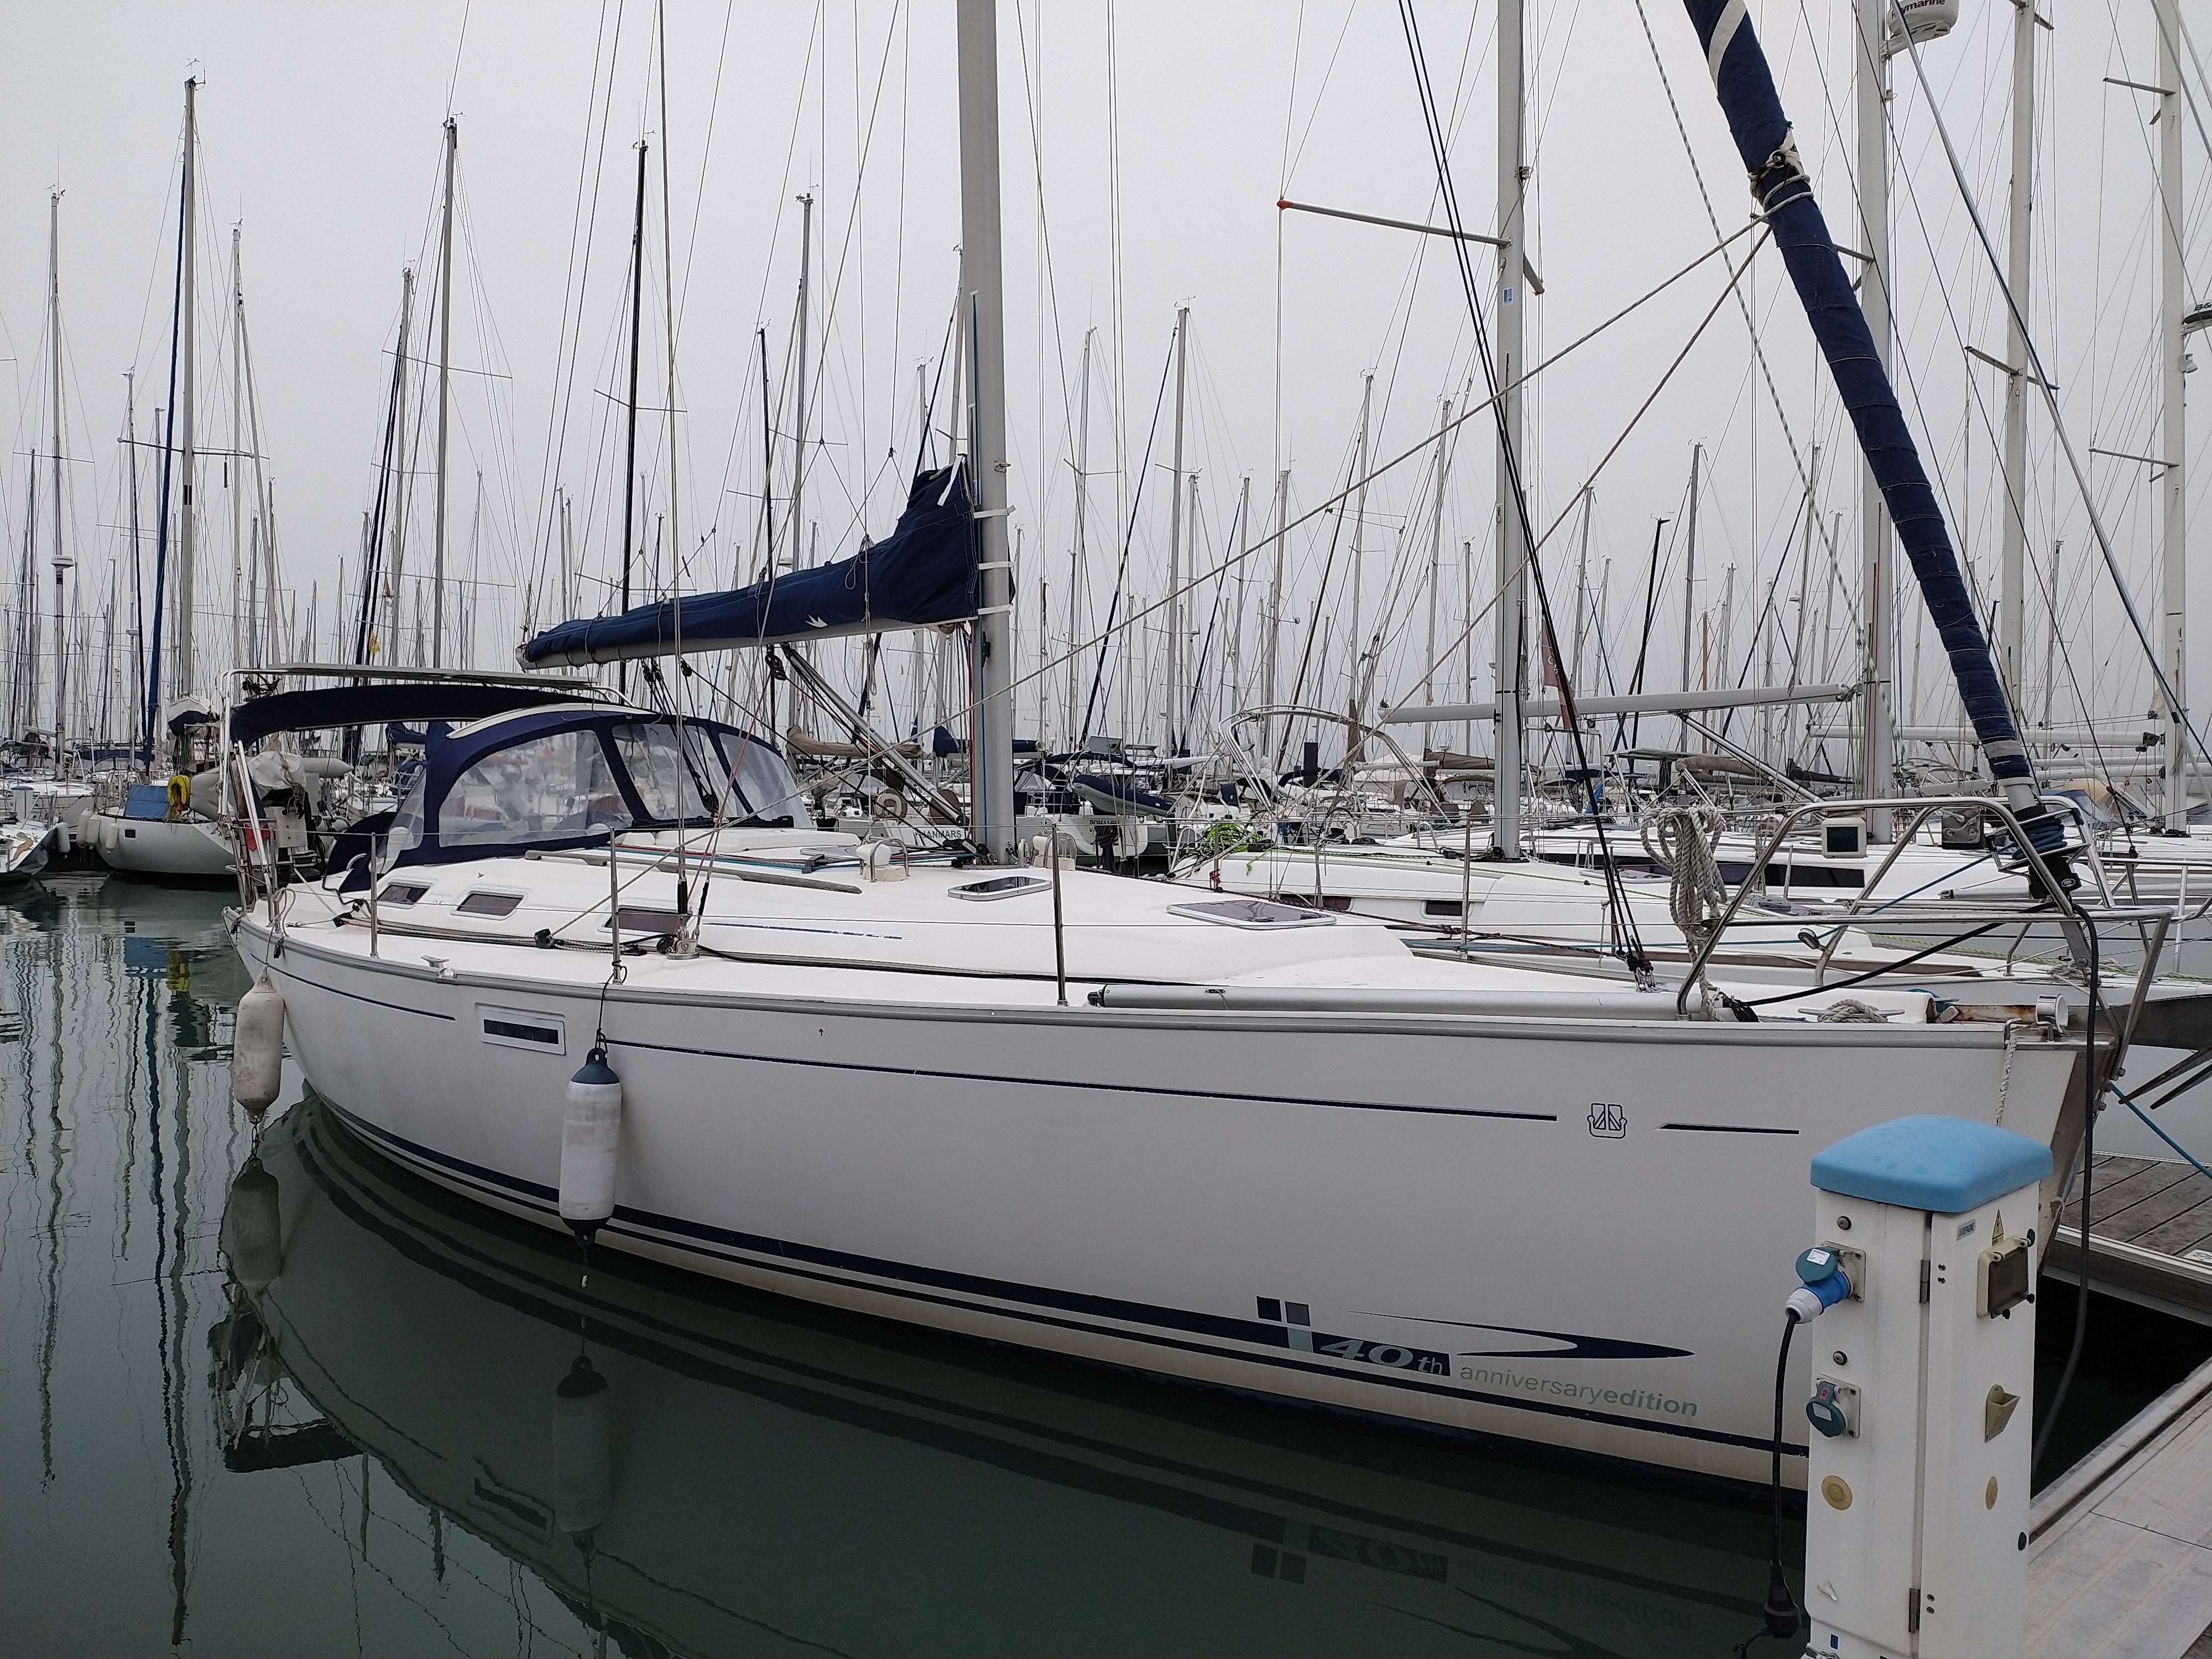 Dufour 385 - 3 cab. - Yacht Charter La Rochelle & Boat hire in France Bay of Biscay La Rochelle La Rochelle 3